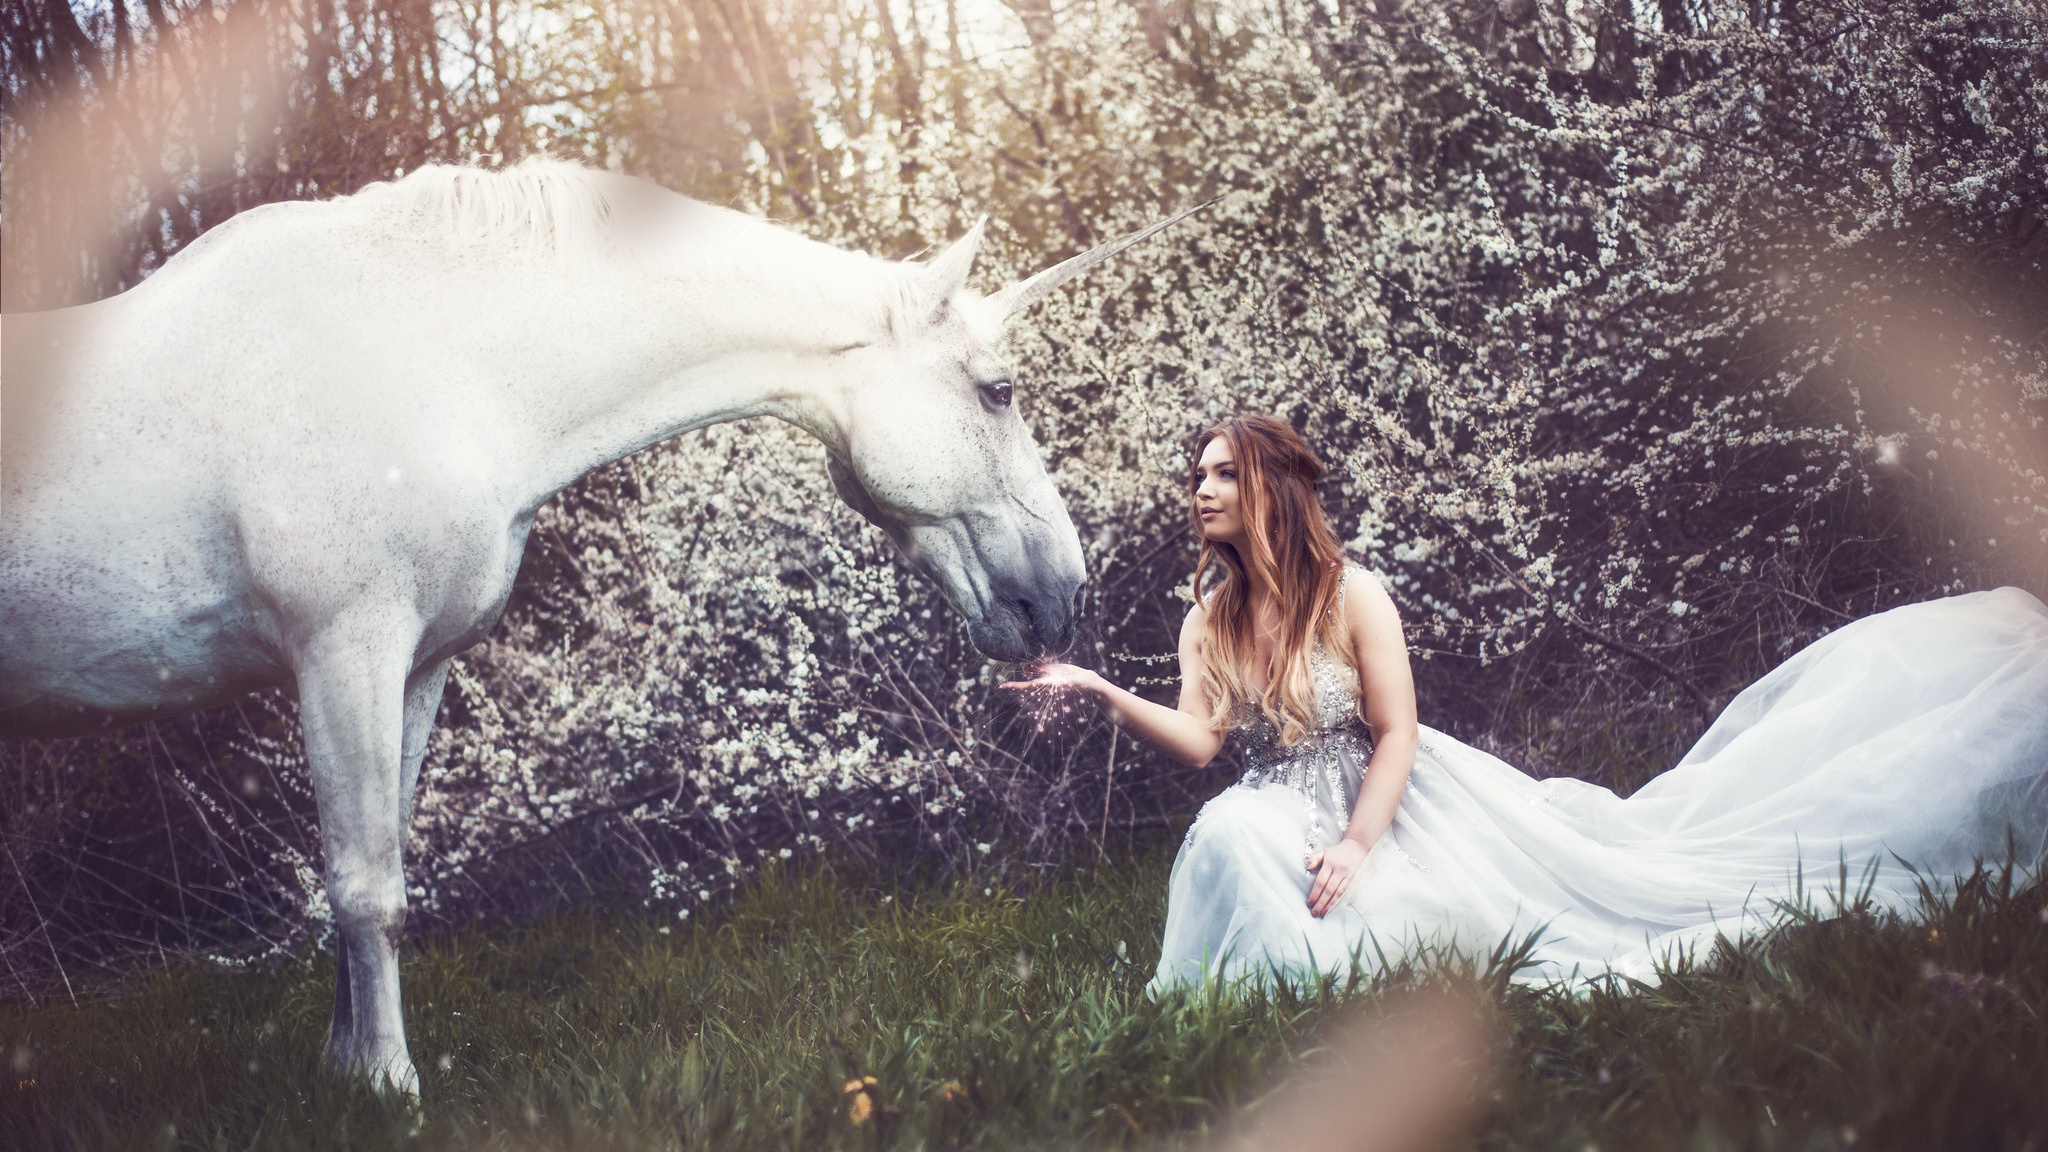 Women Model Unicorn Animals Dress White Dress Women Outdoors Horse Fantasy Girl Flowers Brunette 2048x1152